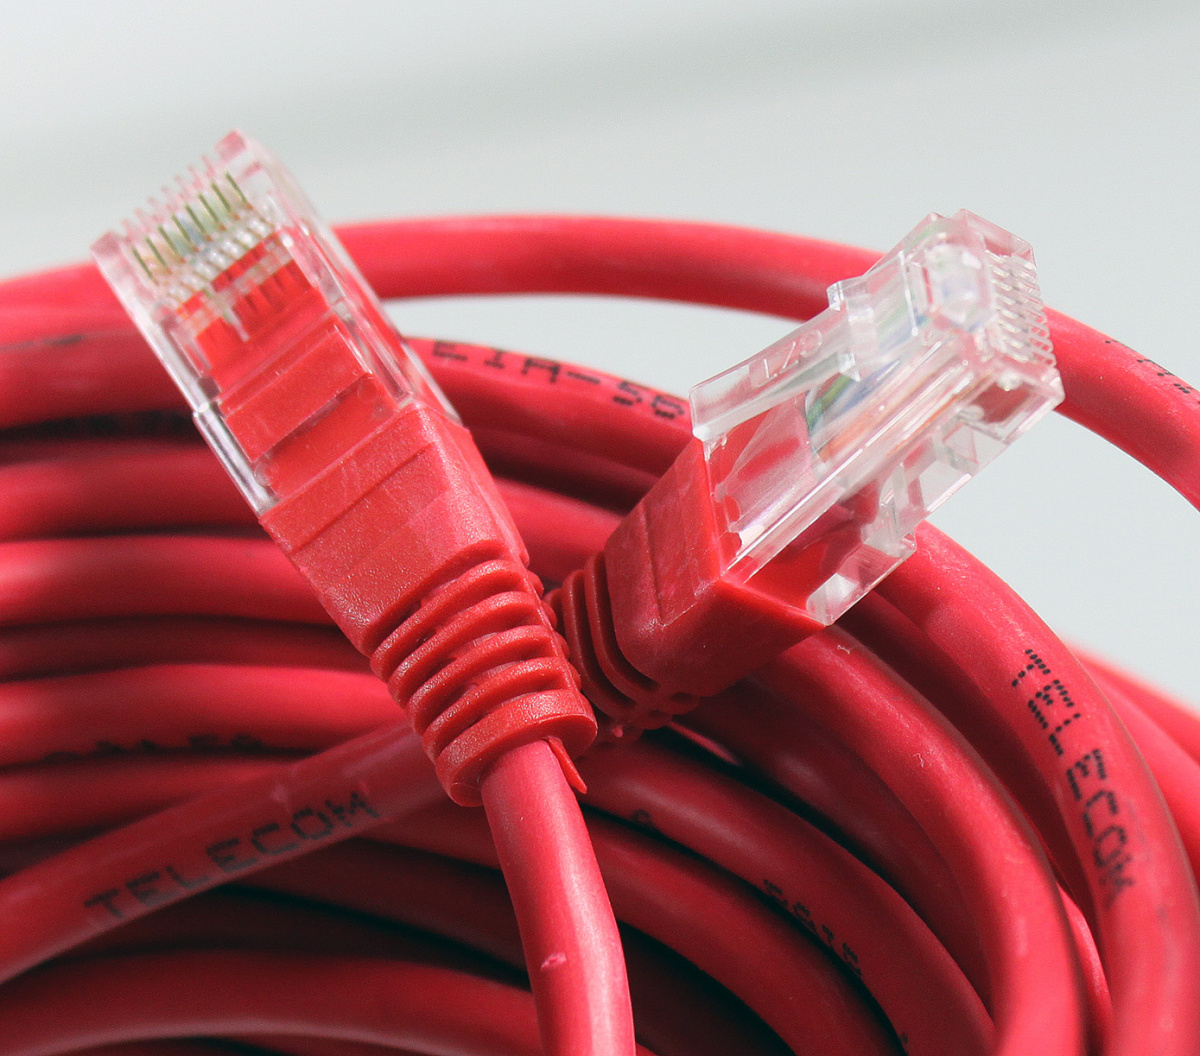 Telecom na102-l-15m. Сетевой кабель красный. Провод в красной упаковке. Telecom Cabel. Красный кабель купить